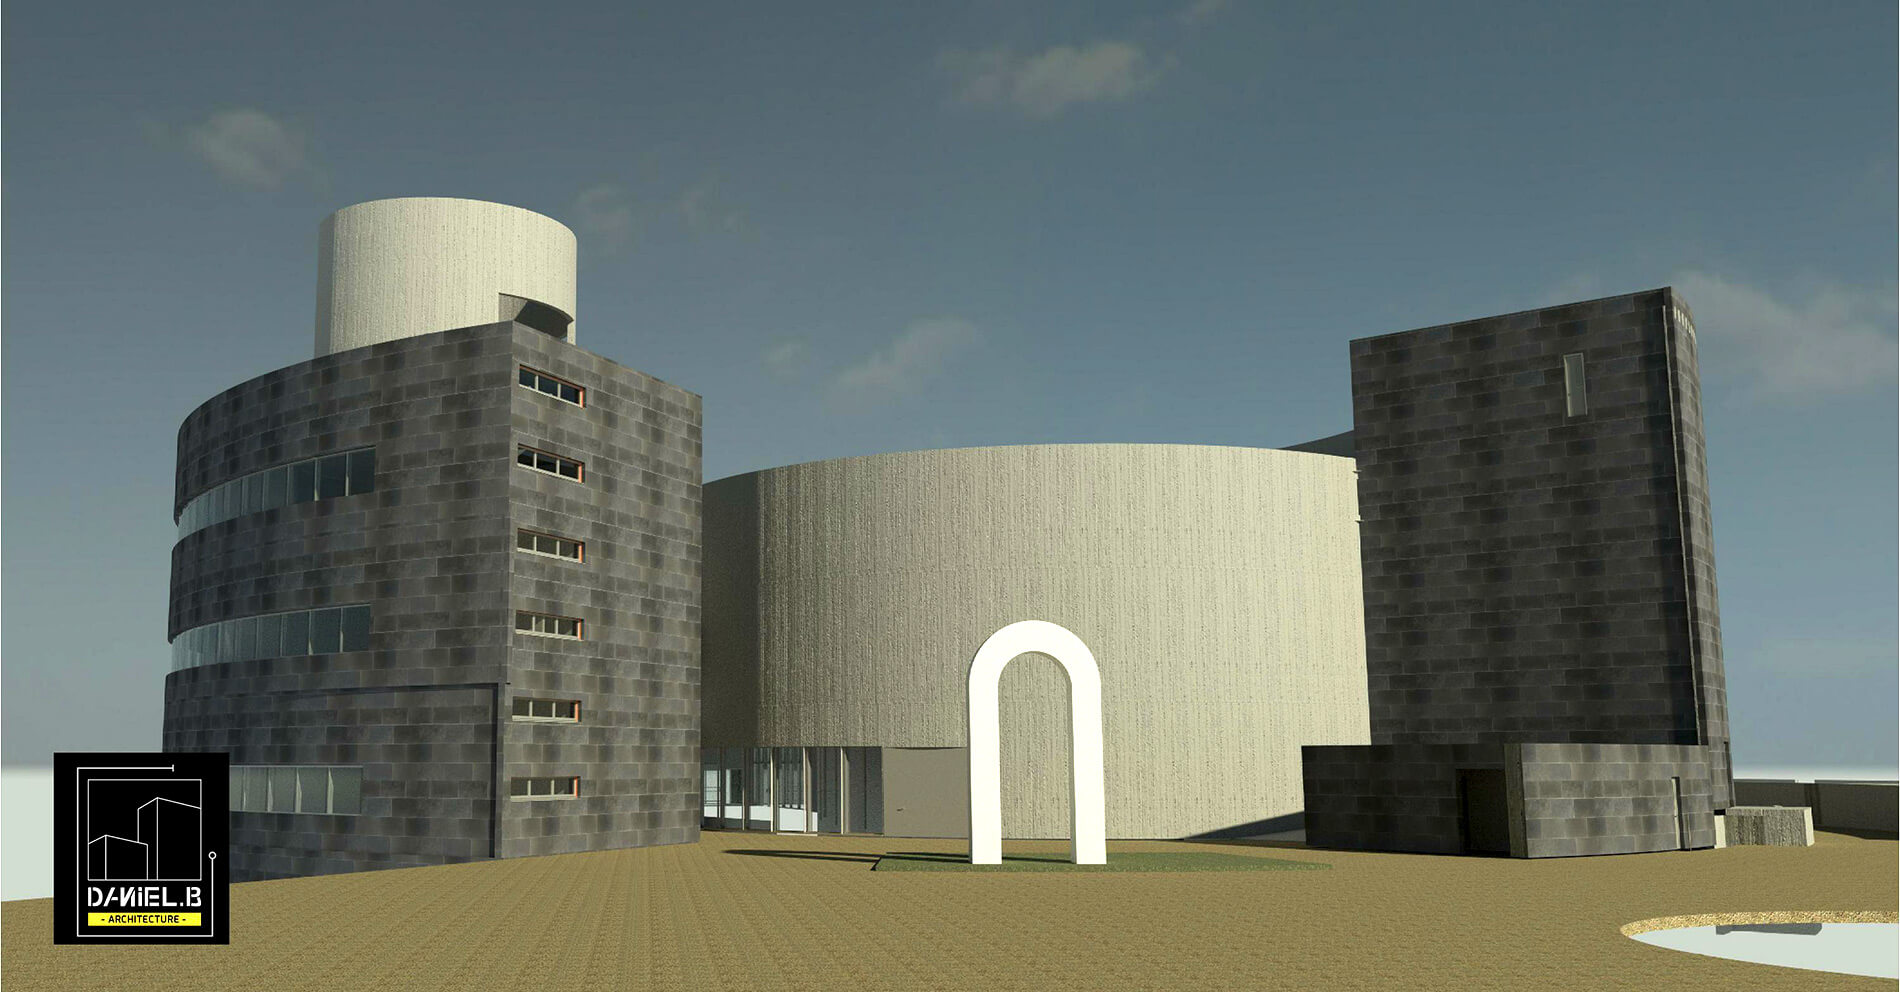 תמונת פרויקט שרטוט ומיחשוב תוכניות בנייה למבנה היסטורי בקיבוץ גינוסר